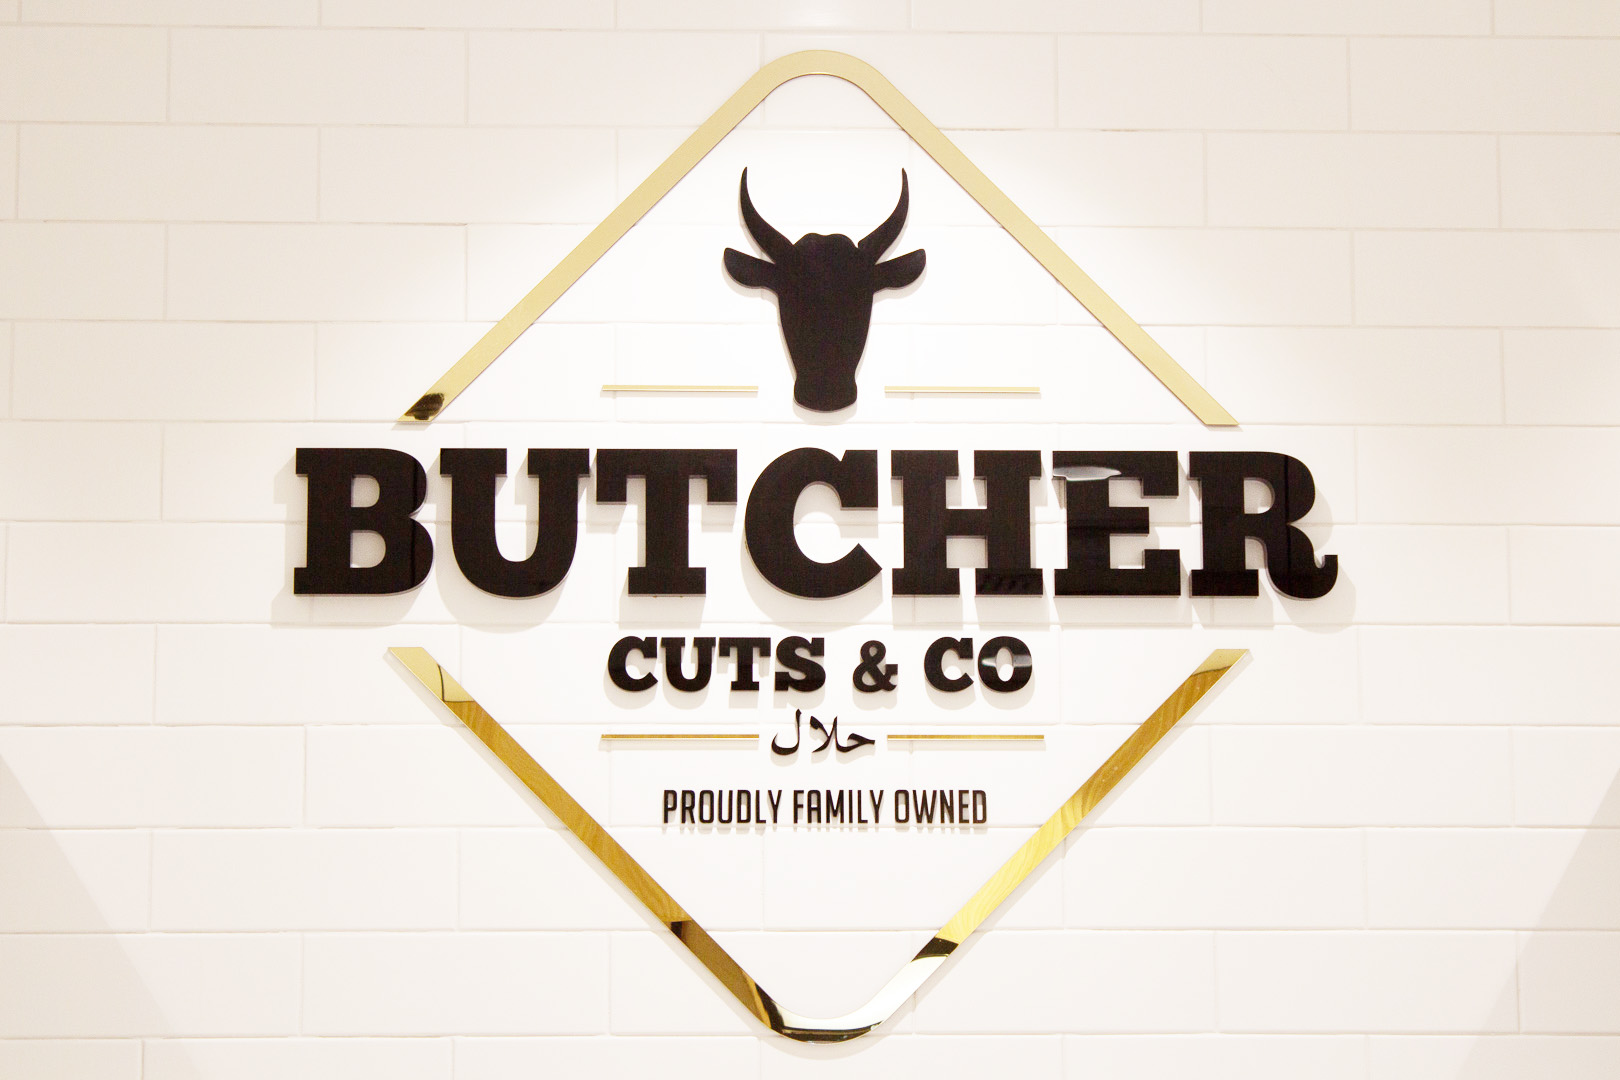 Butcher shop designer Gold Coast